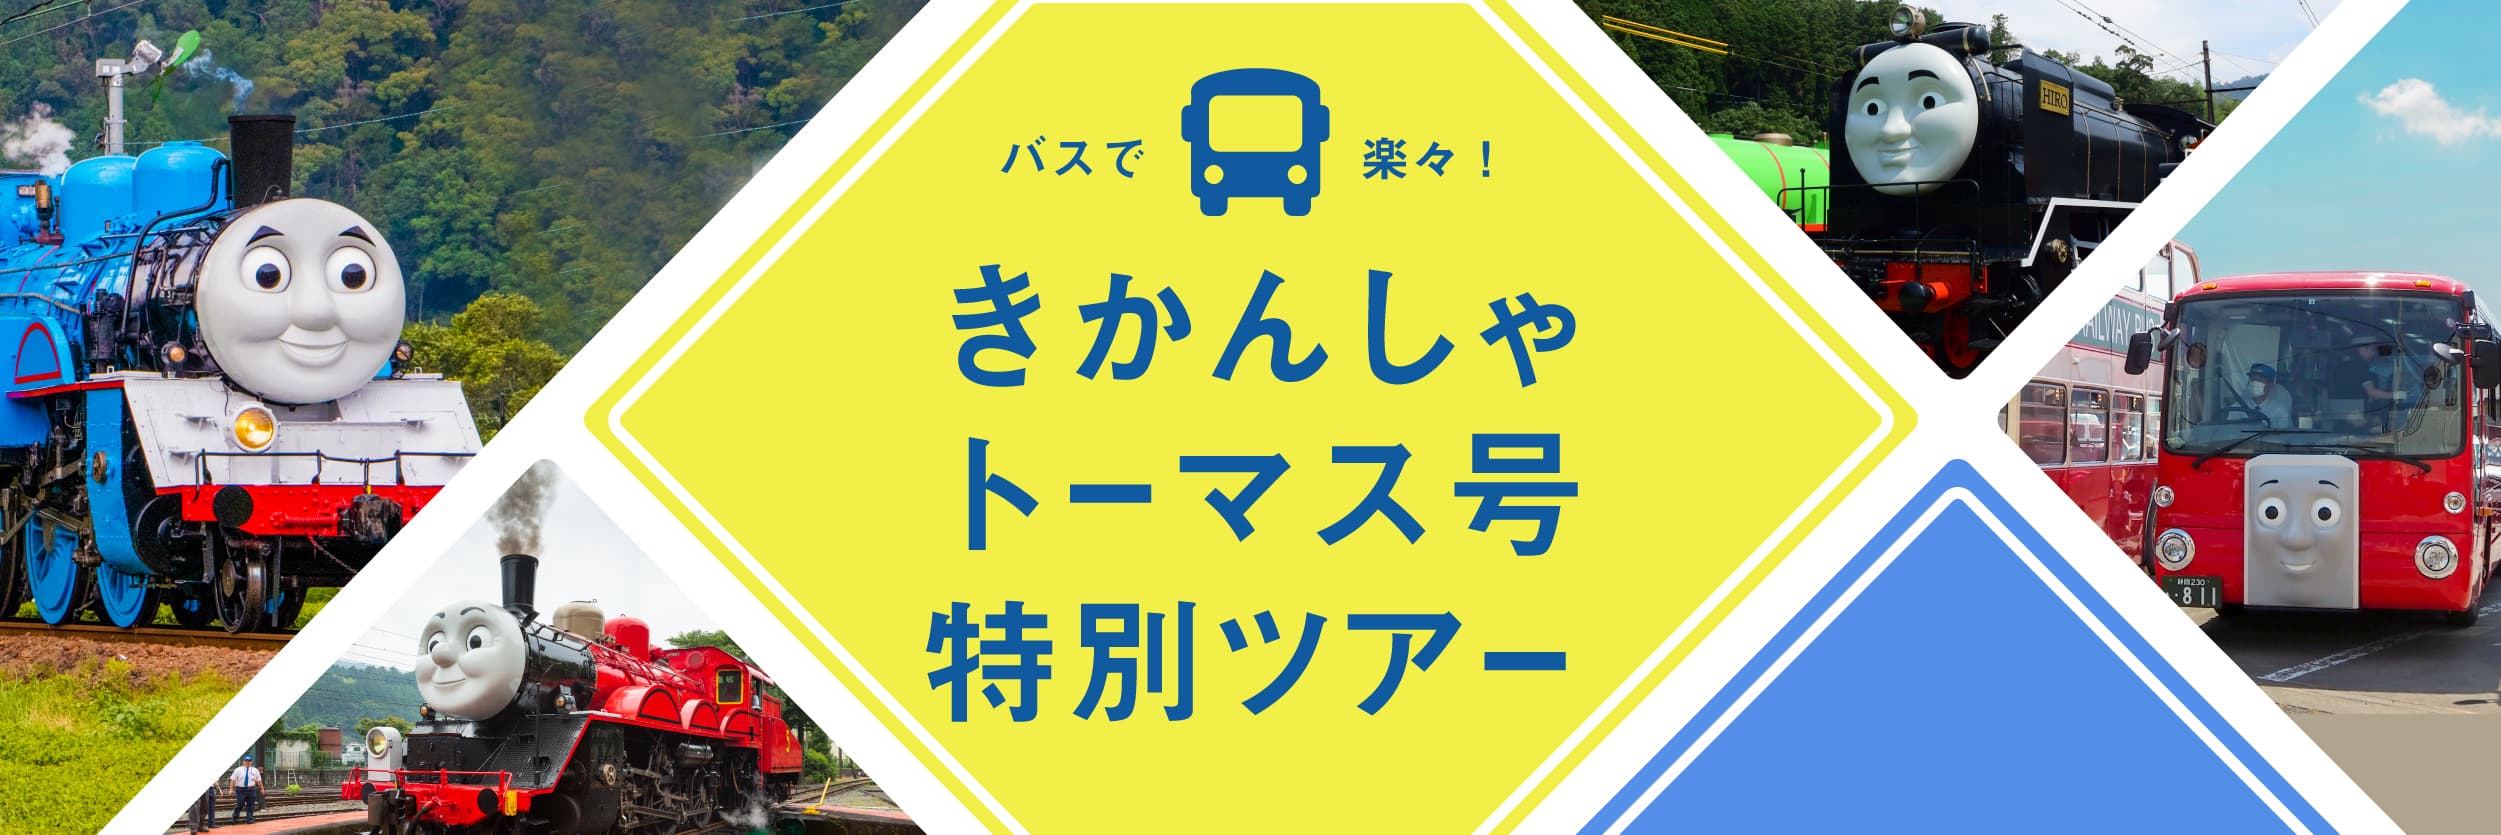 大井川鐵道きかんしゃトーマス号のツアー特集ページへリンクするバナー